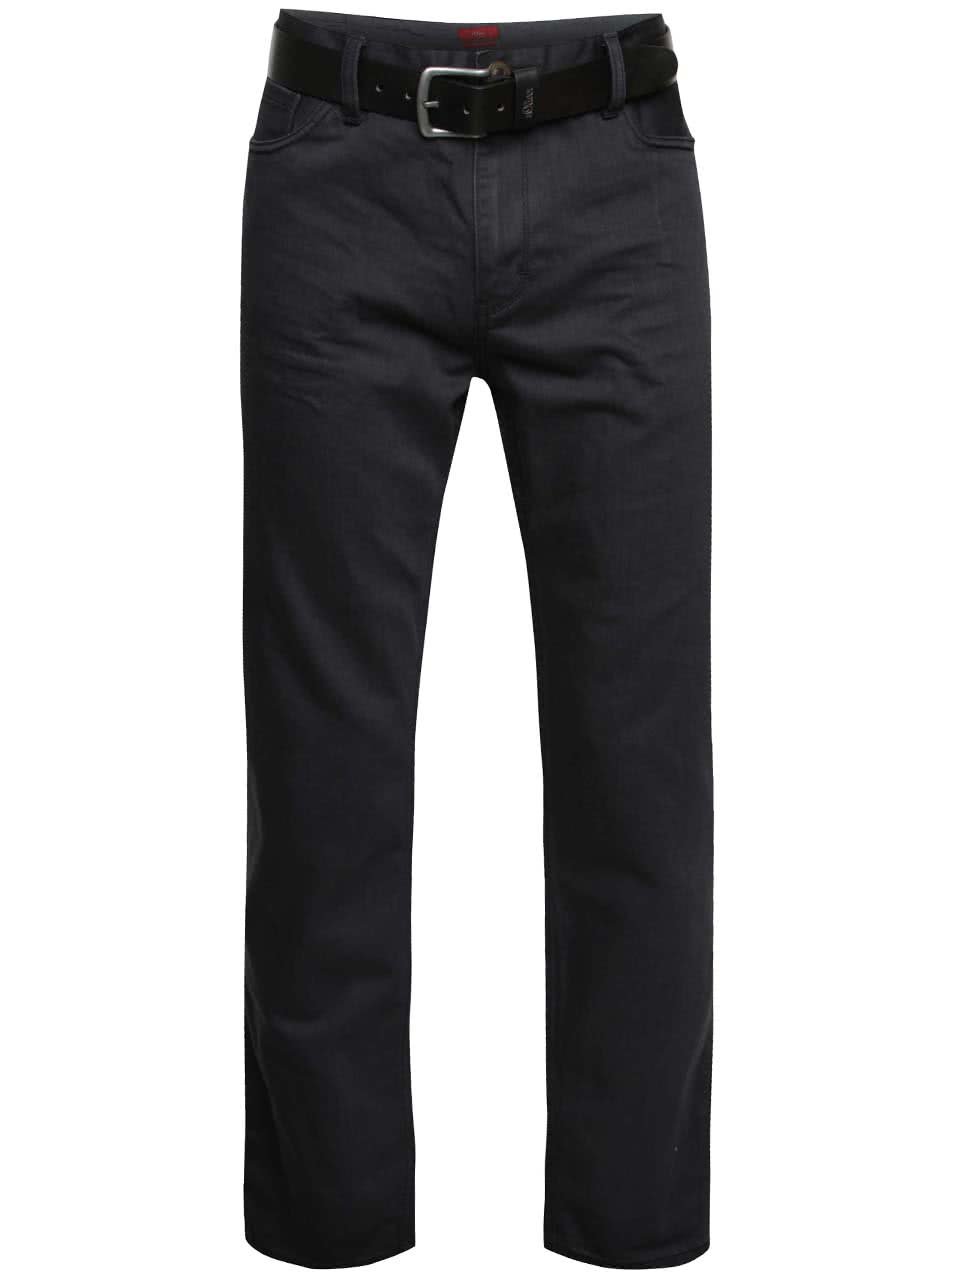 Tmavě šedé pánské džíny s páskem s.Oliver